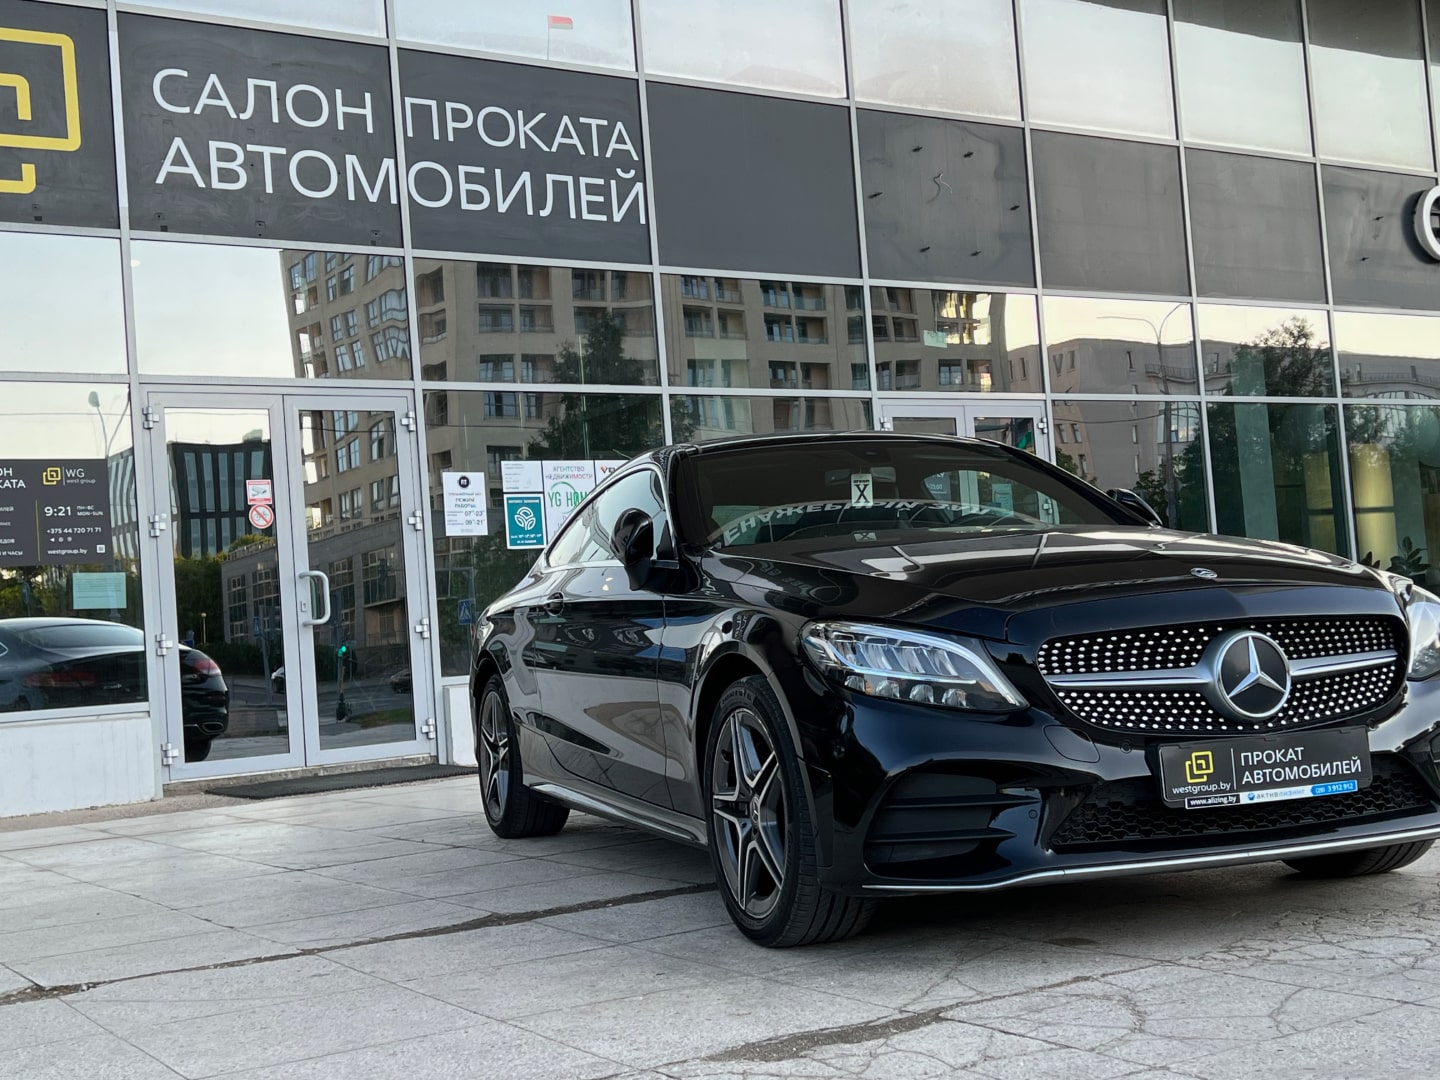 Аренда  Mercedes-benz C-class Coupe W205 C200 4MATIC Premium  3 класса 2018 года в городе Минск от 155 $/сутки,  двигатель: Бензин , объем 2.0 литров, КАСКО (Мультидрайв), без водителя, вид 2 - West Group